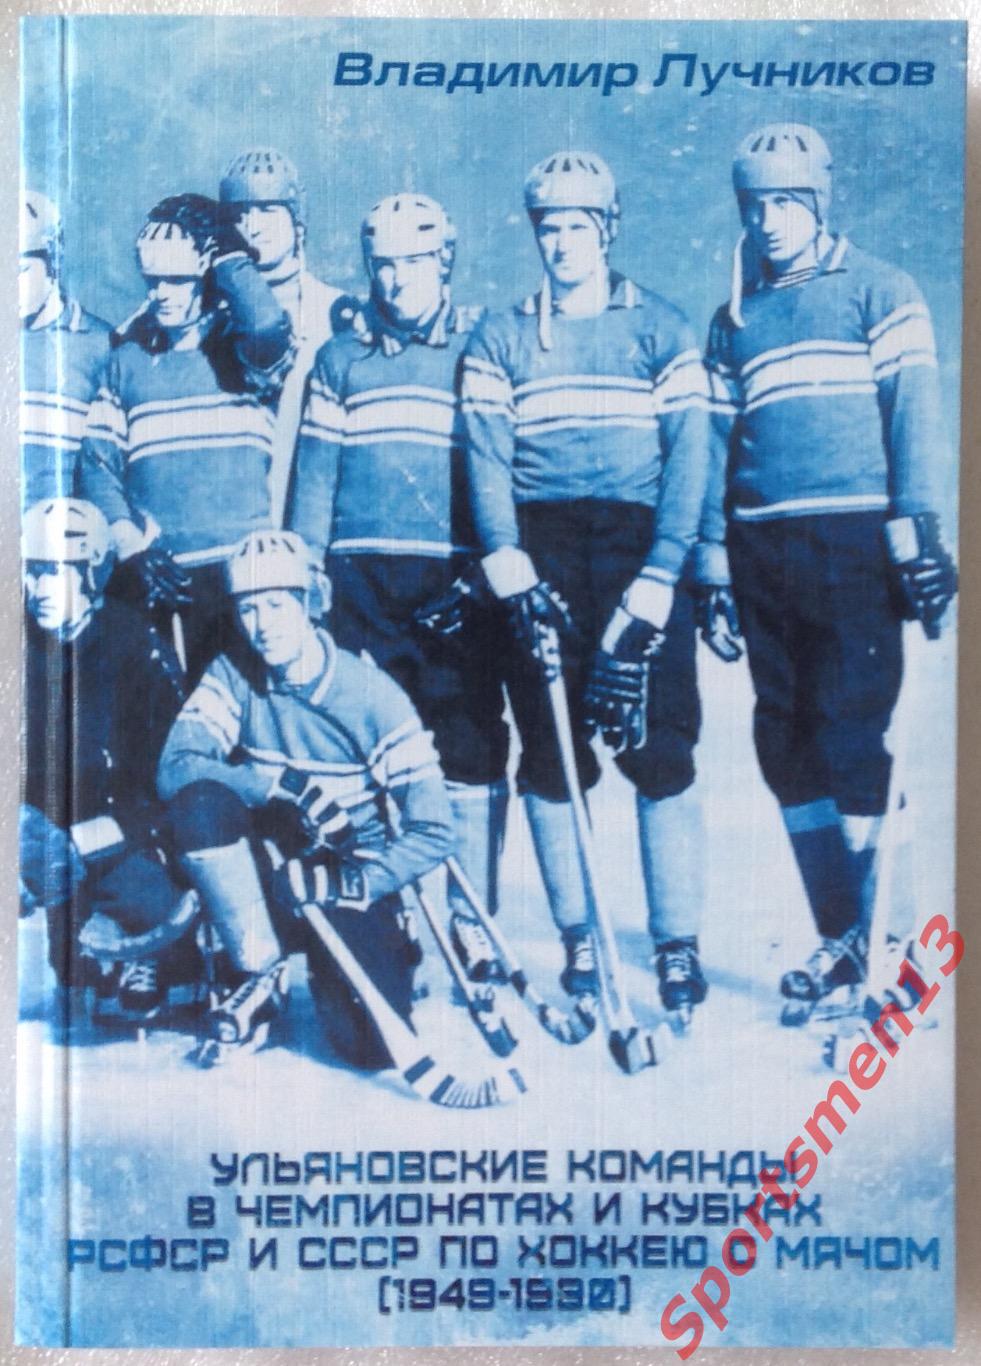 Ульяновские команды в чемпионатах и кубках РСФСР и СССР по хоккею с мячом.